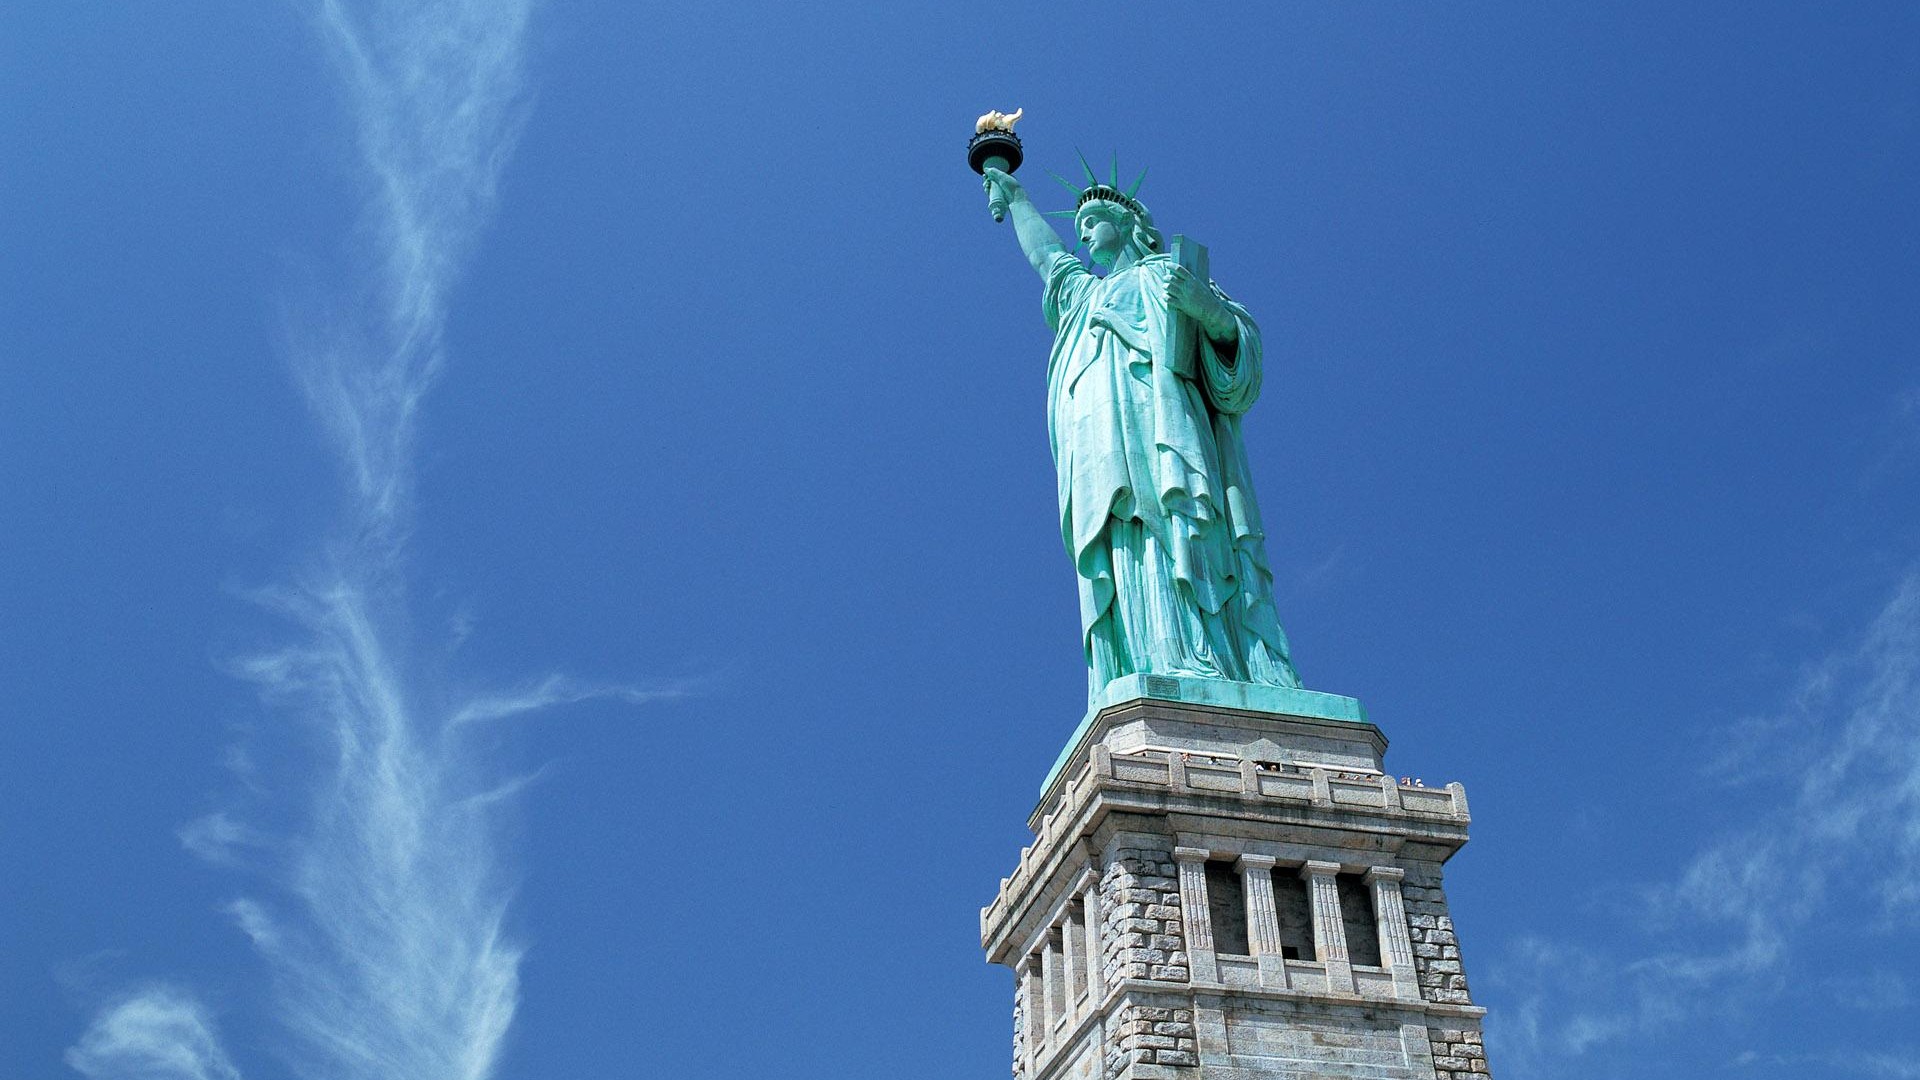 Скачать обои бесплатно Статуя Свободы, Статуя, Памятник, Сделано Человеком картинка на рабочий стол ПК